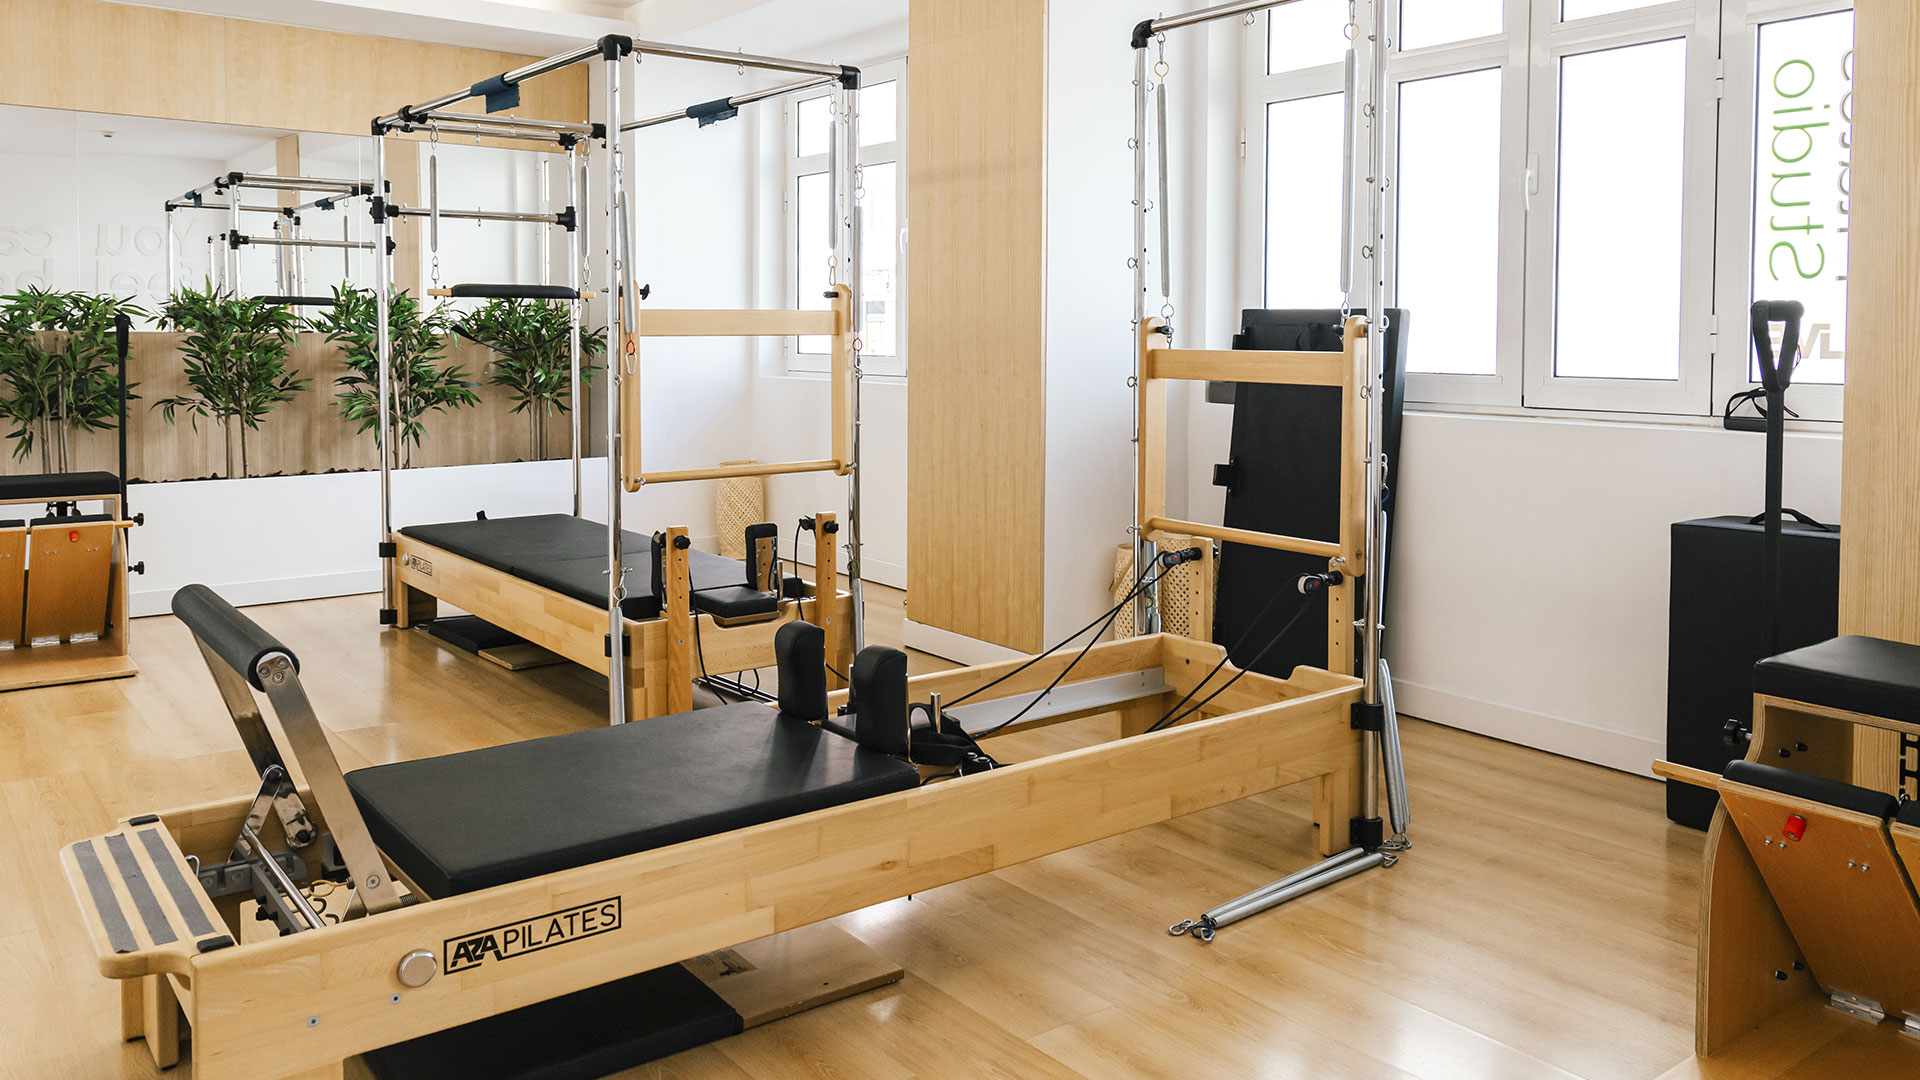 O novo estúdio de pilates de Lisboa é uma fuga para o stress da vida diária